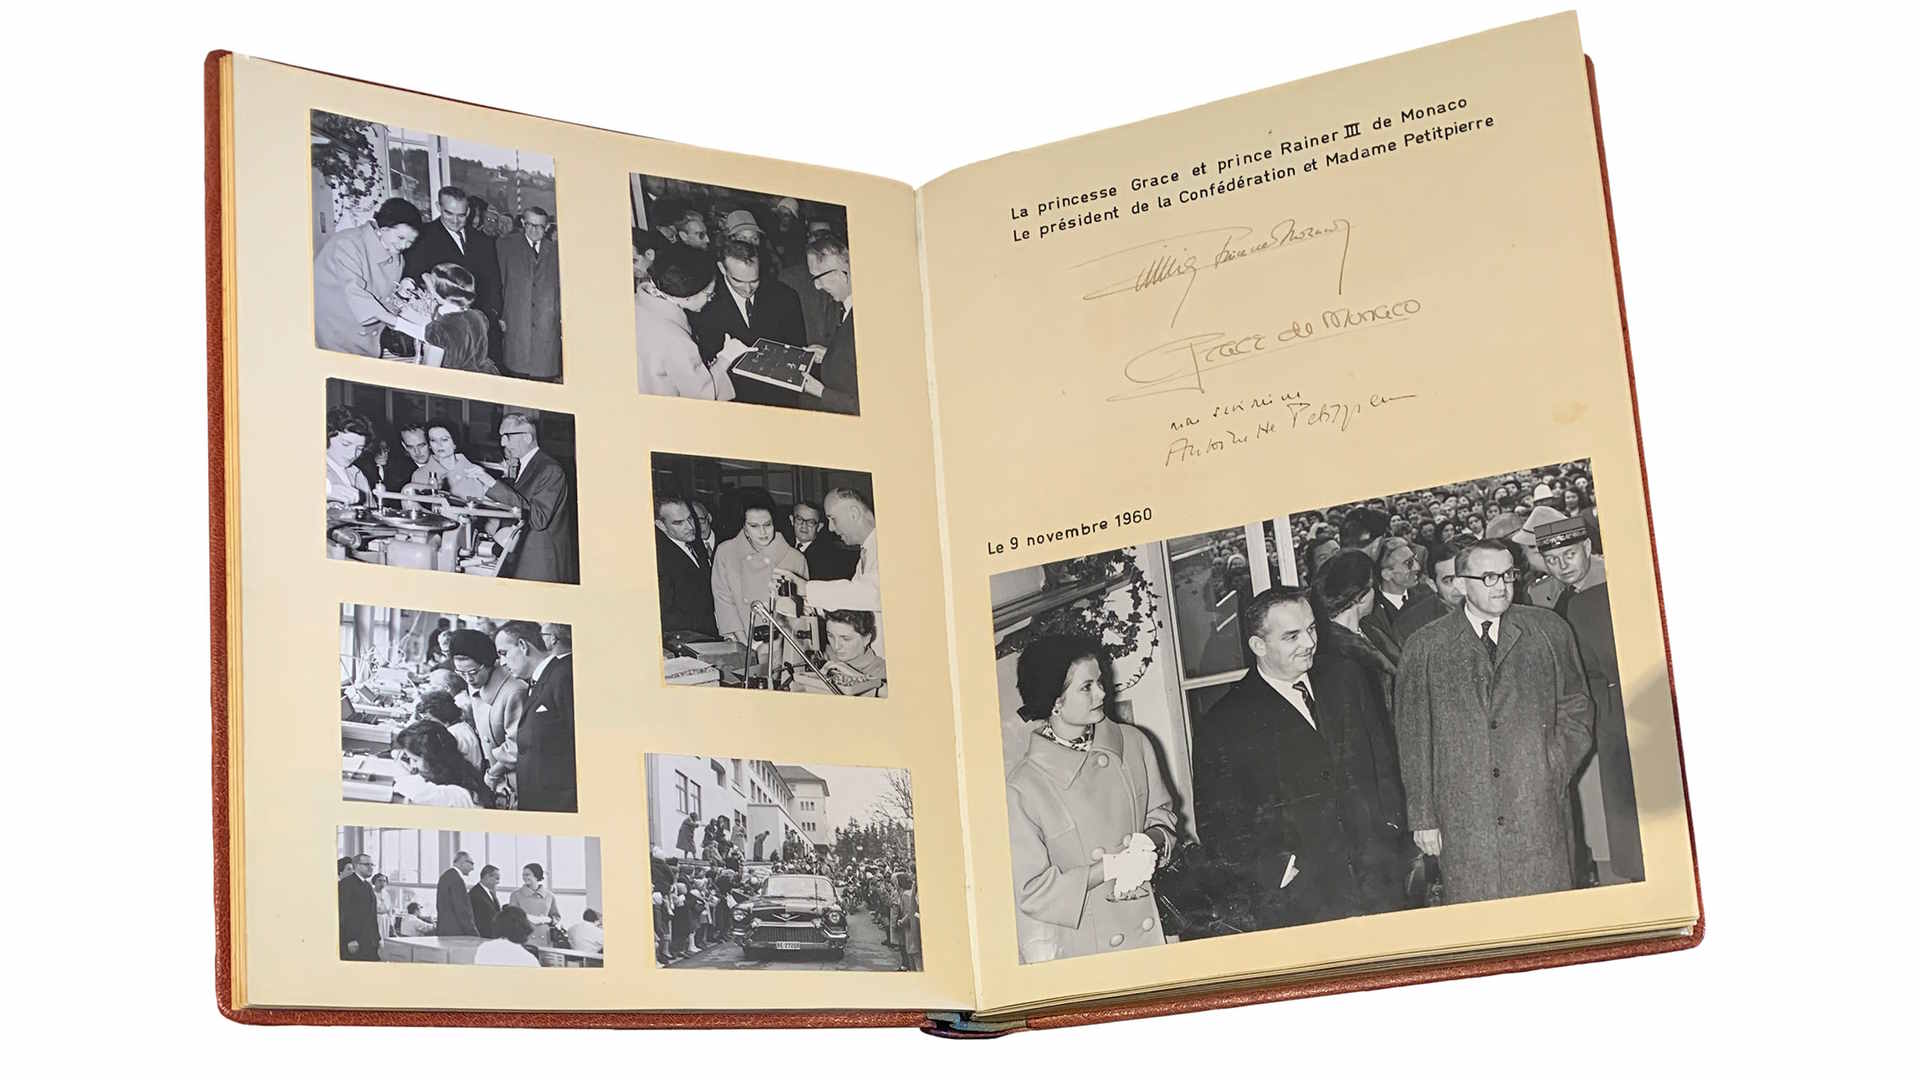 Historische Highlights aus der Tissot-Geschichte, festgehalten in alten Fotobüchern.